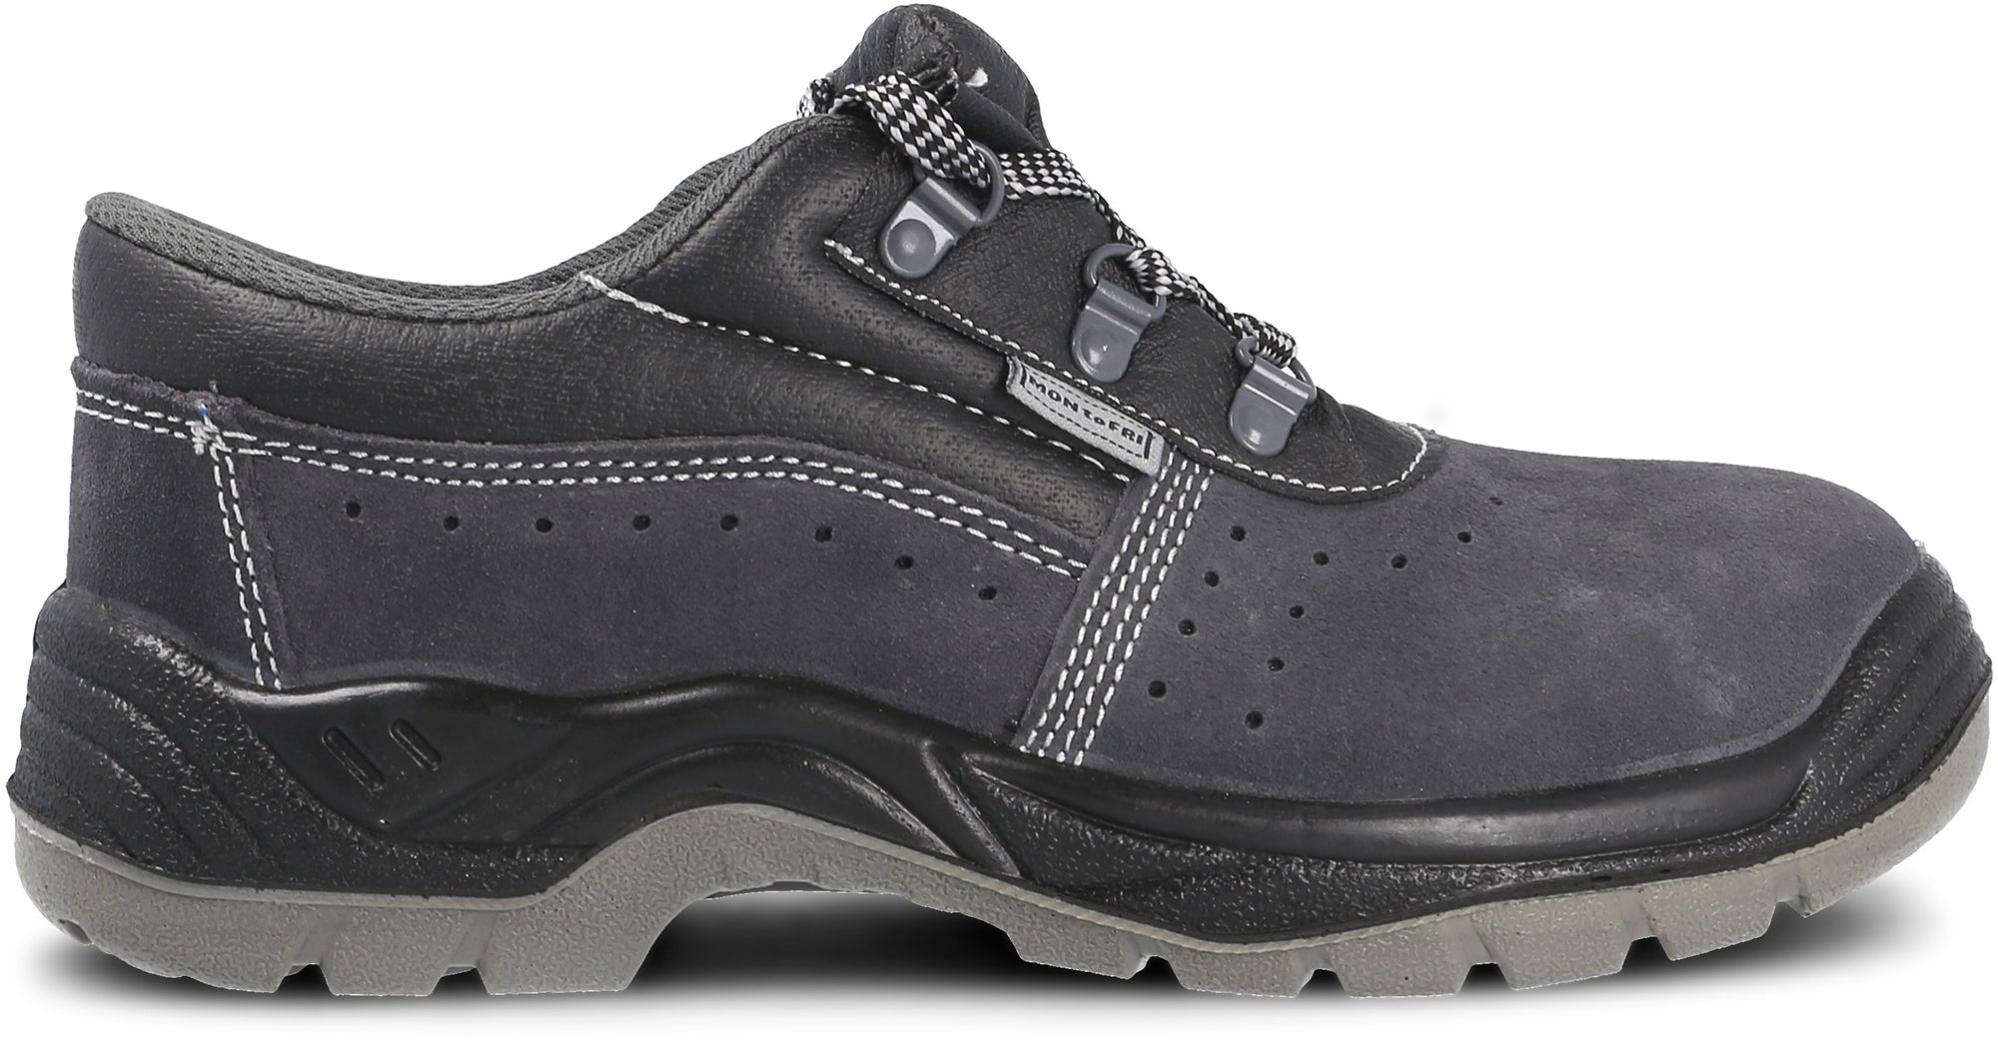 Zapato seguridad paredes, zp1002 serraje gris, s1p talla 35